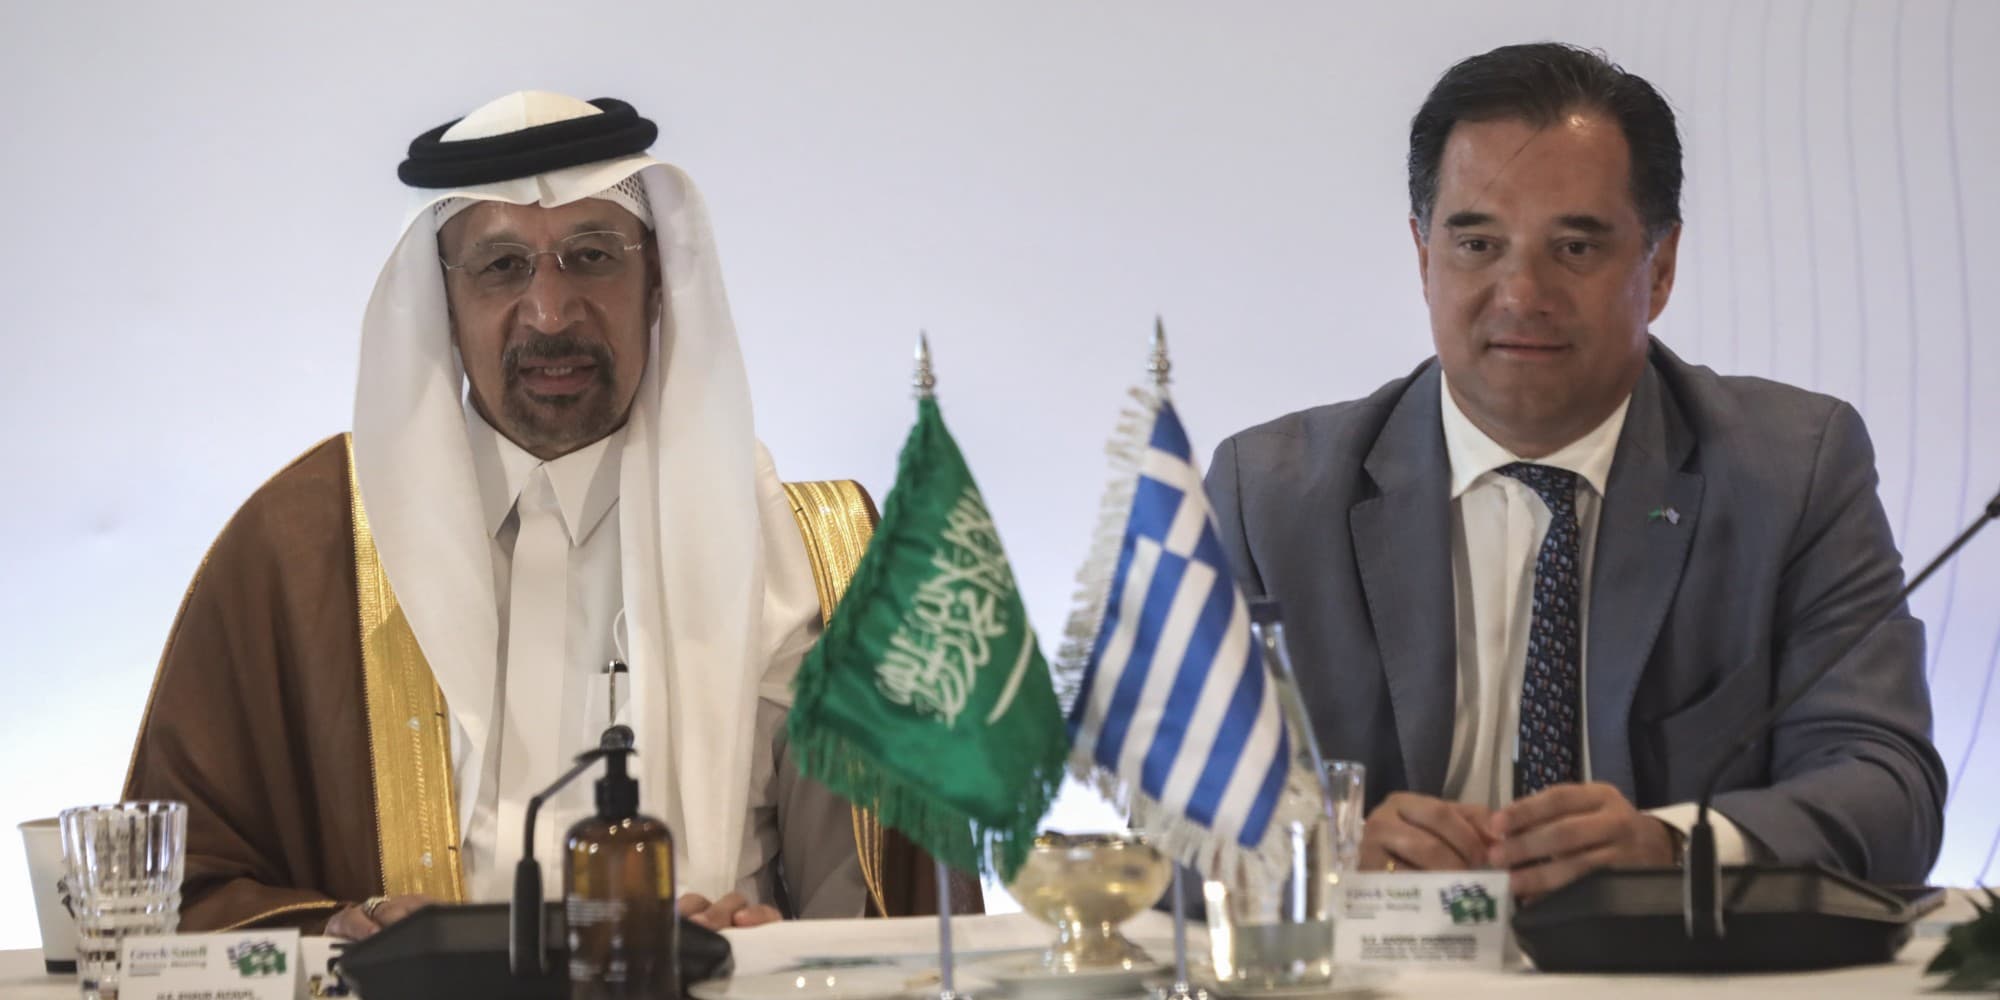 Ο Γεωργιάδης σε επιχειρηματική συνάντηση στο πλαίσιο της επίσκεψης του Πρίγκιπα-Διαδόχου της Σαουδικής Αραβίας στην Αθήνα